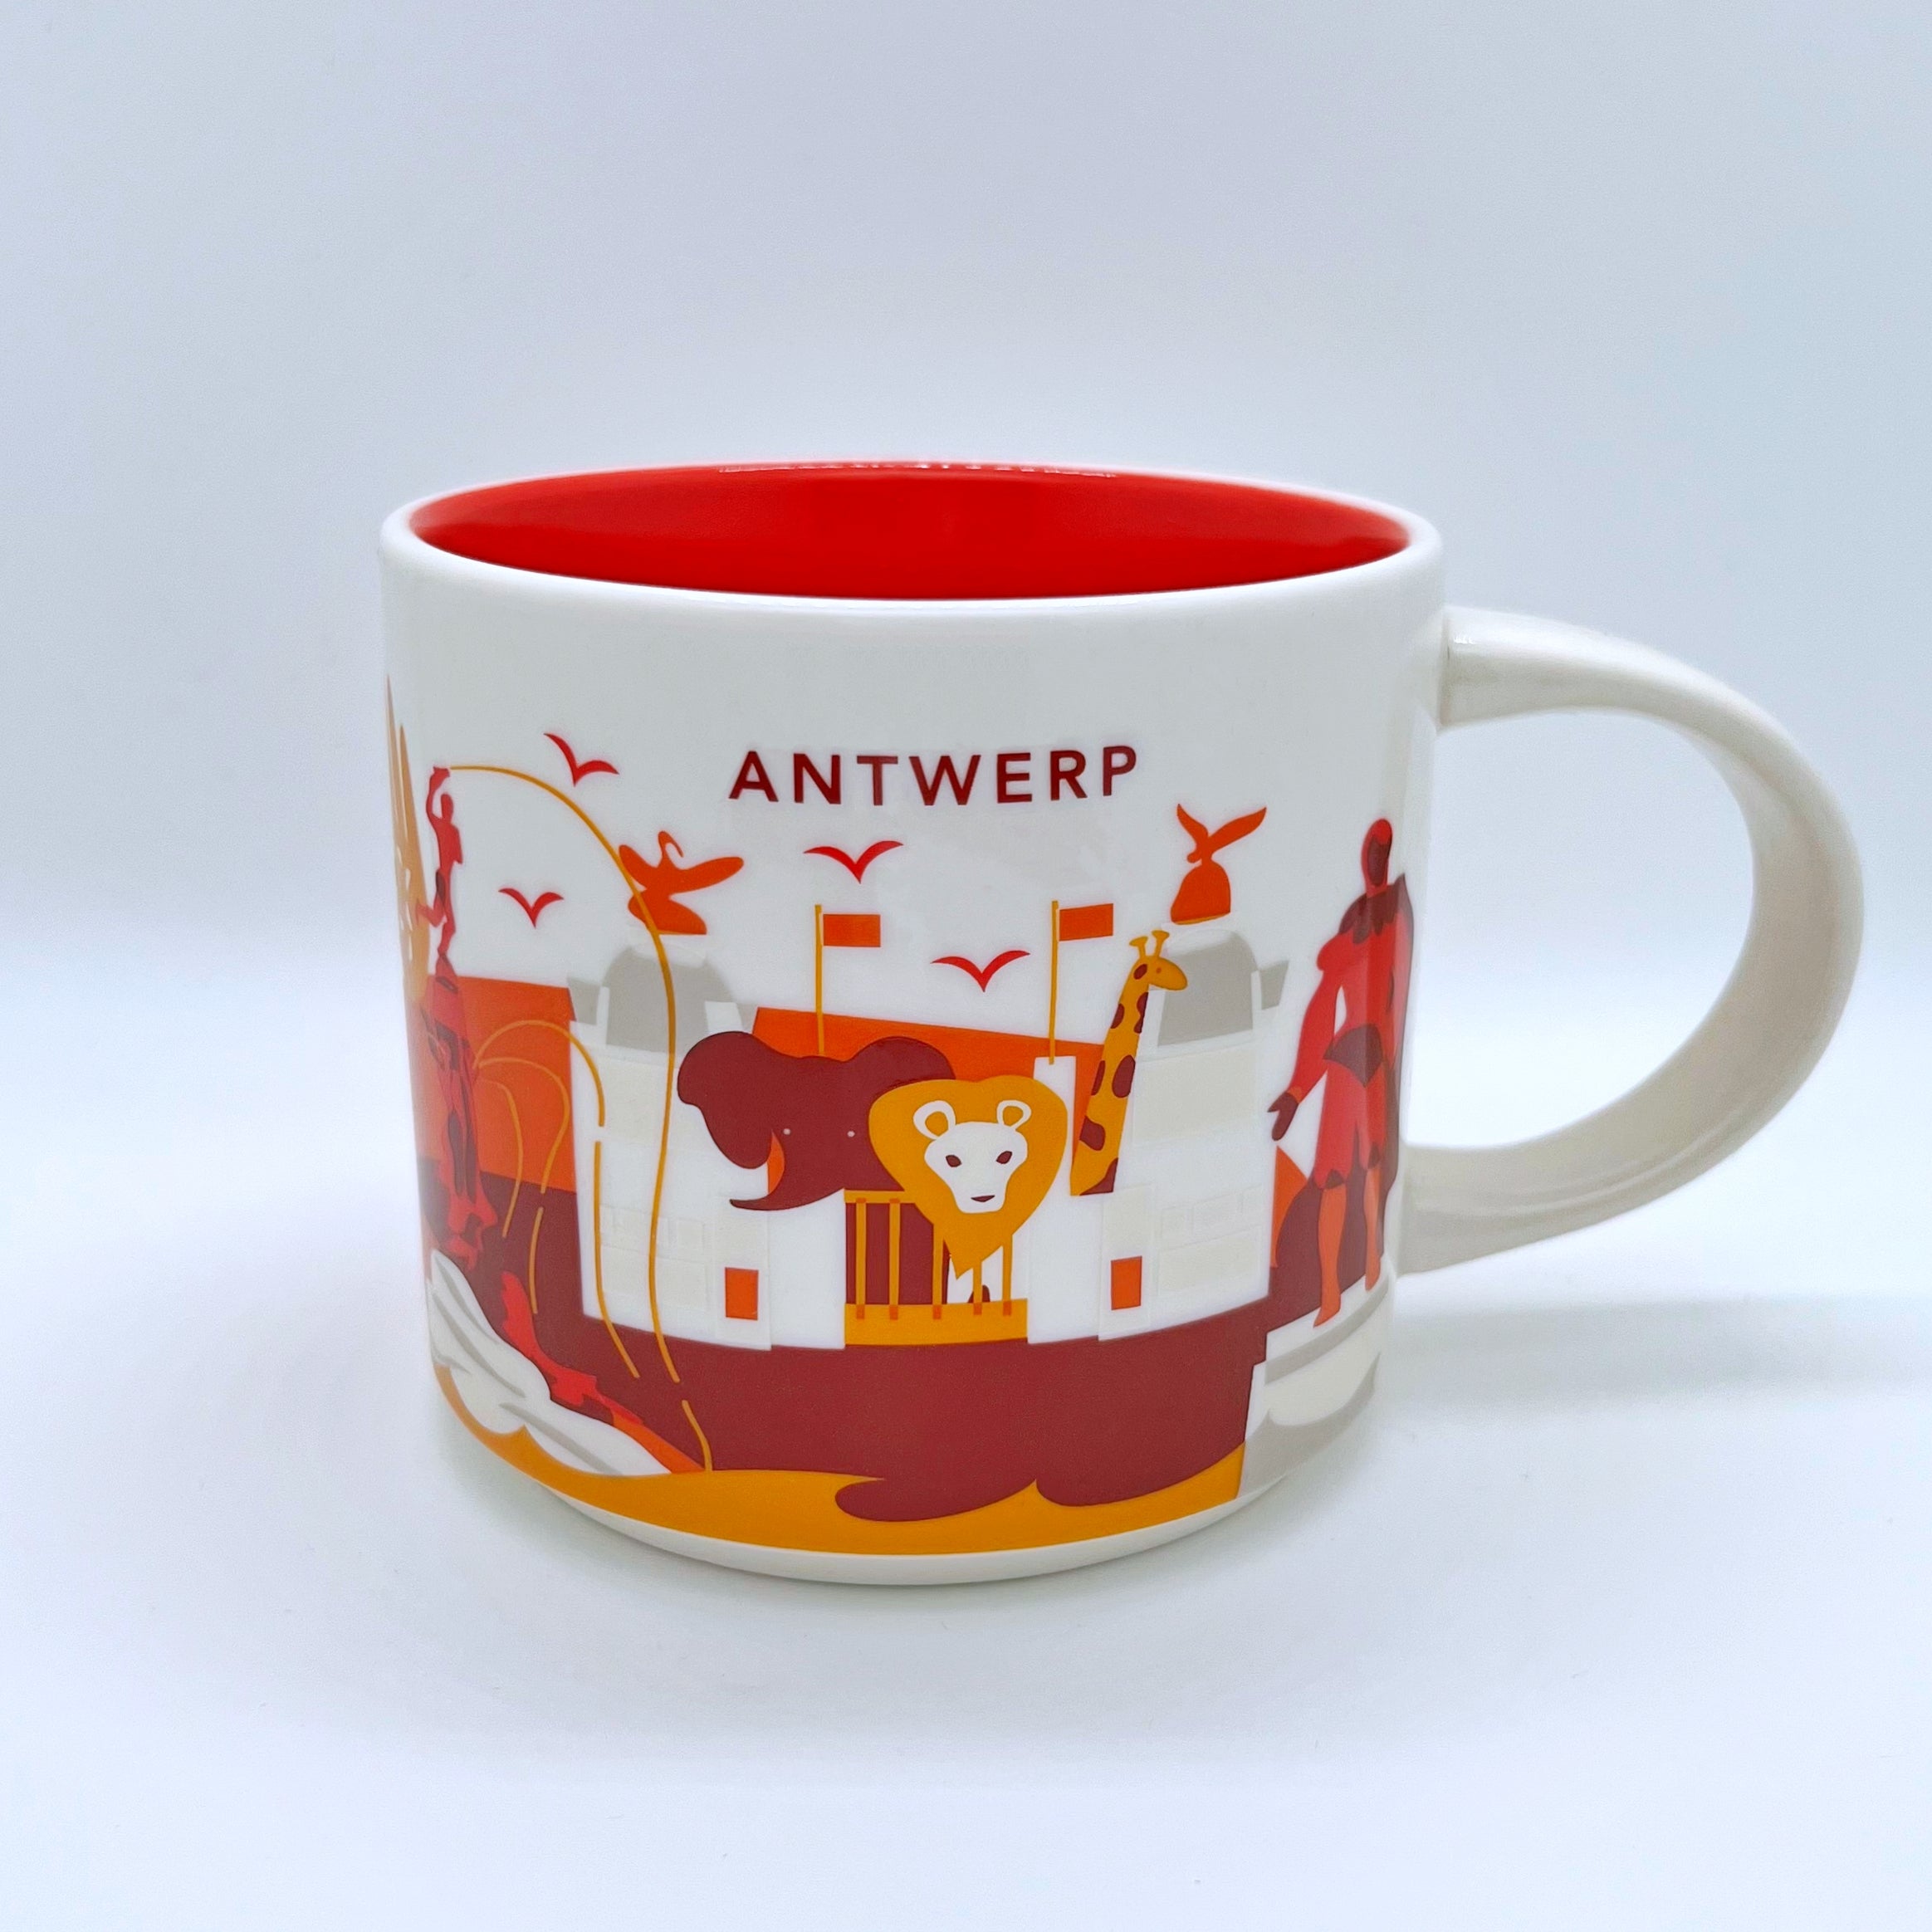 Kaffee Tee und Cappuccino Tasse von Starbucks mit gemalten Bildern aus der Stadt Antwerpen